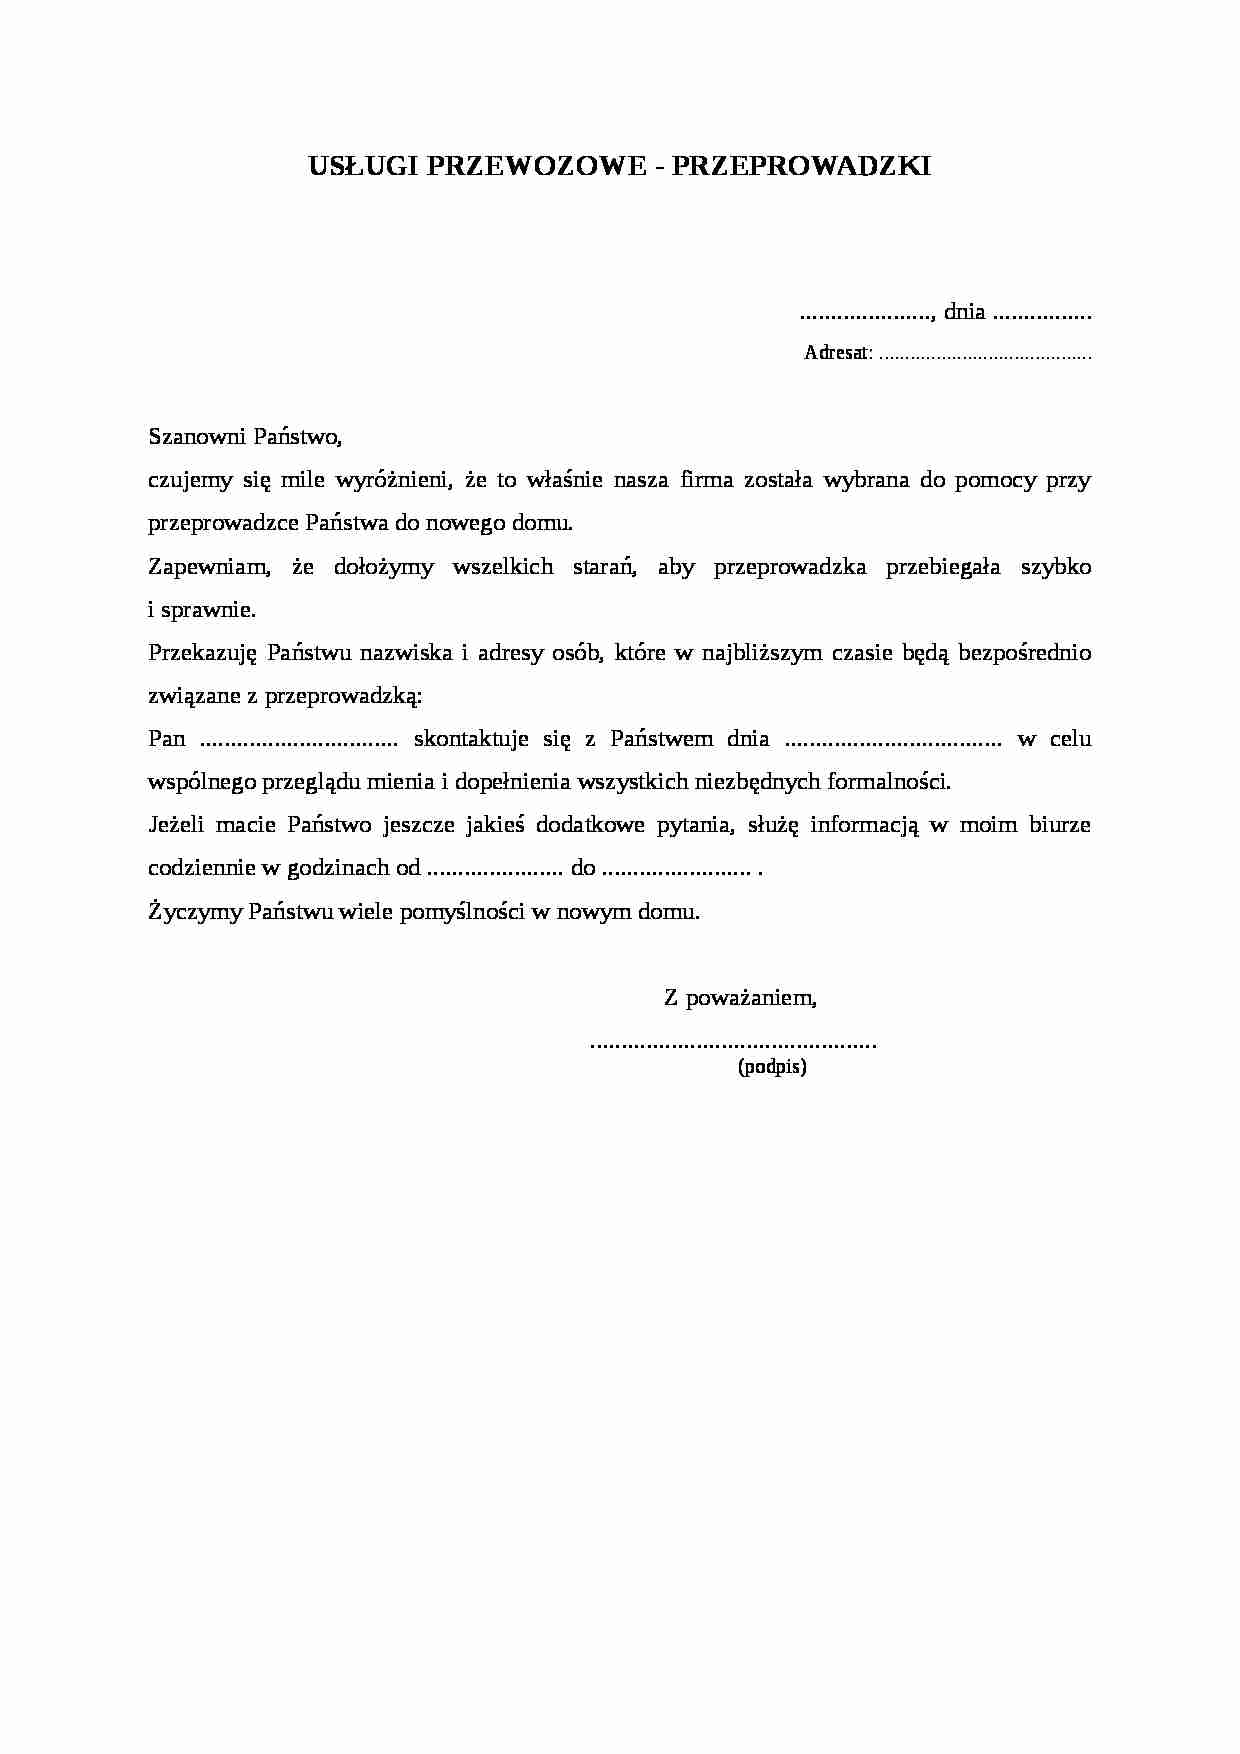 Wzór-Usługi przewozowe - przeprowadzki - strona 1